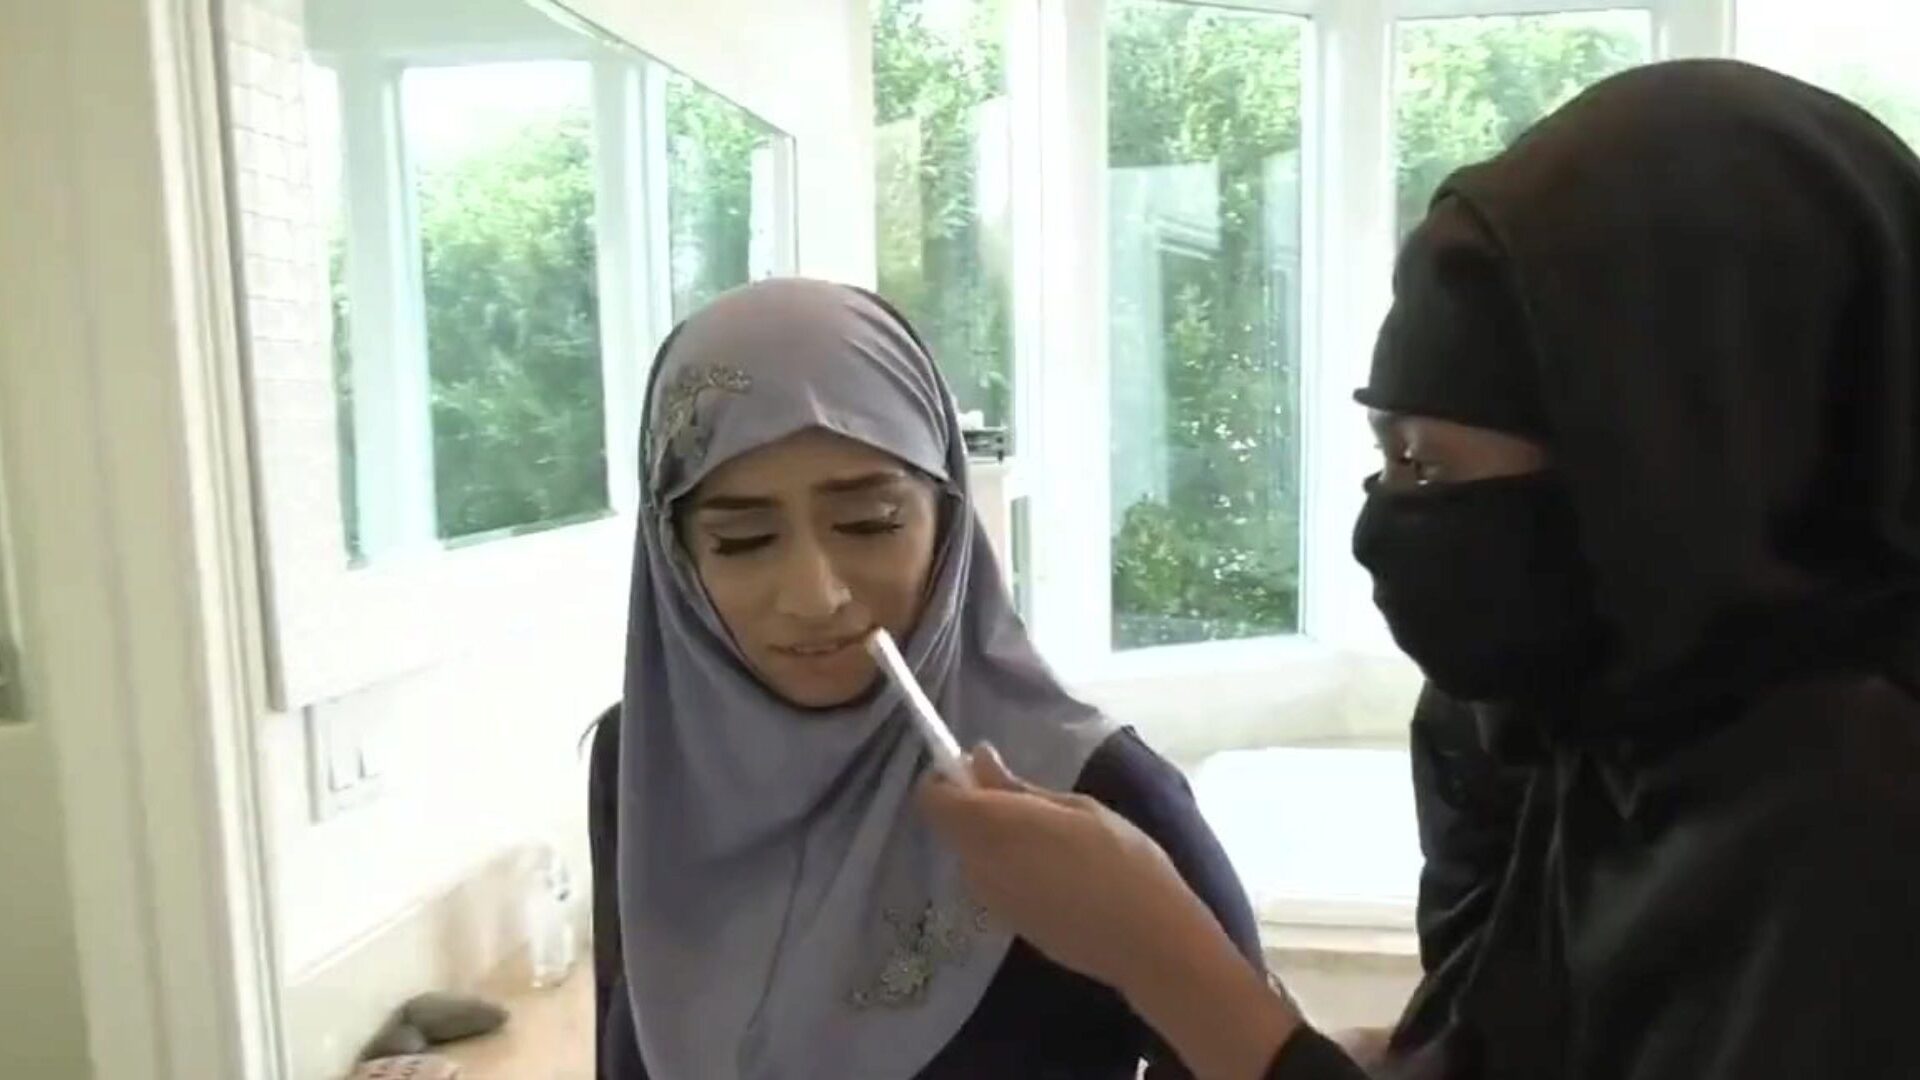 hijab-muslimi-skenaario 19 ilmainen cd-putki hd-porno 89: xhamster-kello hijab-muslimi-skenaario yhdeksäntoista leikettä xhamsterista, kuumin hd-fucky-fucky -putkisivusto, jossa on tonnia ilmaisia ​​arabi-cd-putkia ja iphone-ilmaisia ​​pornoelokuvia